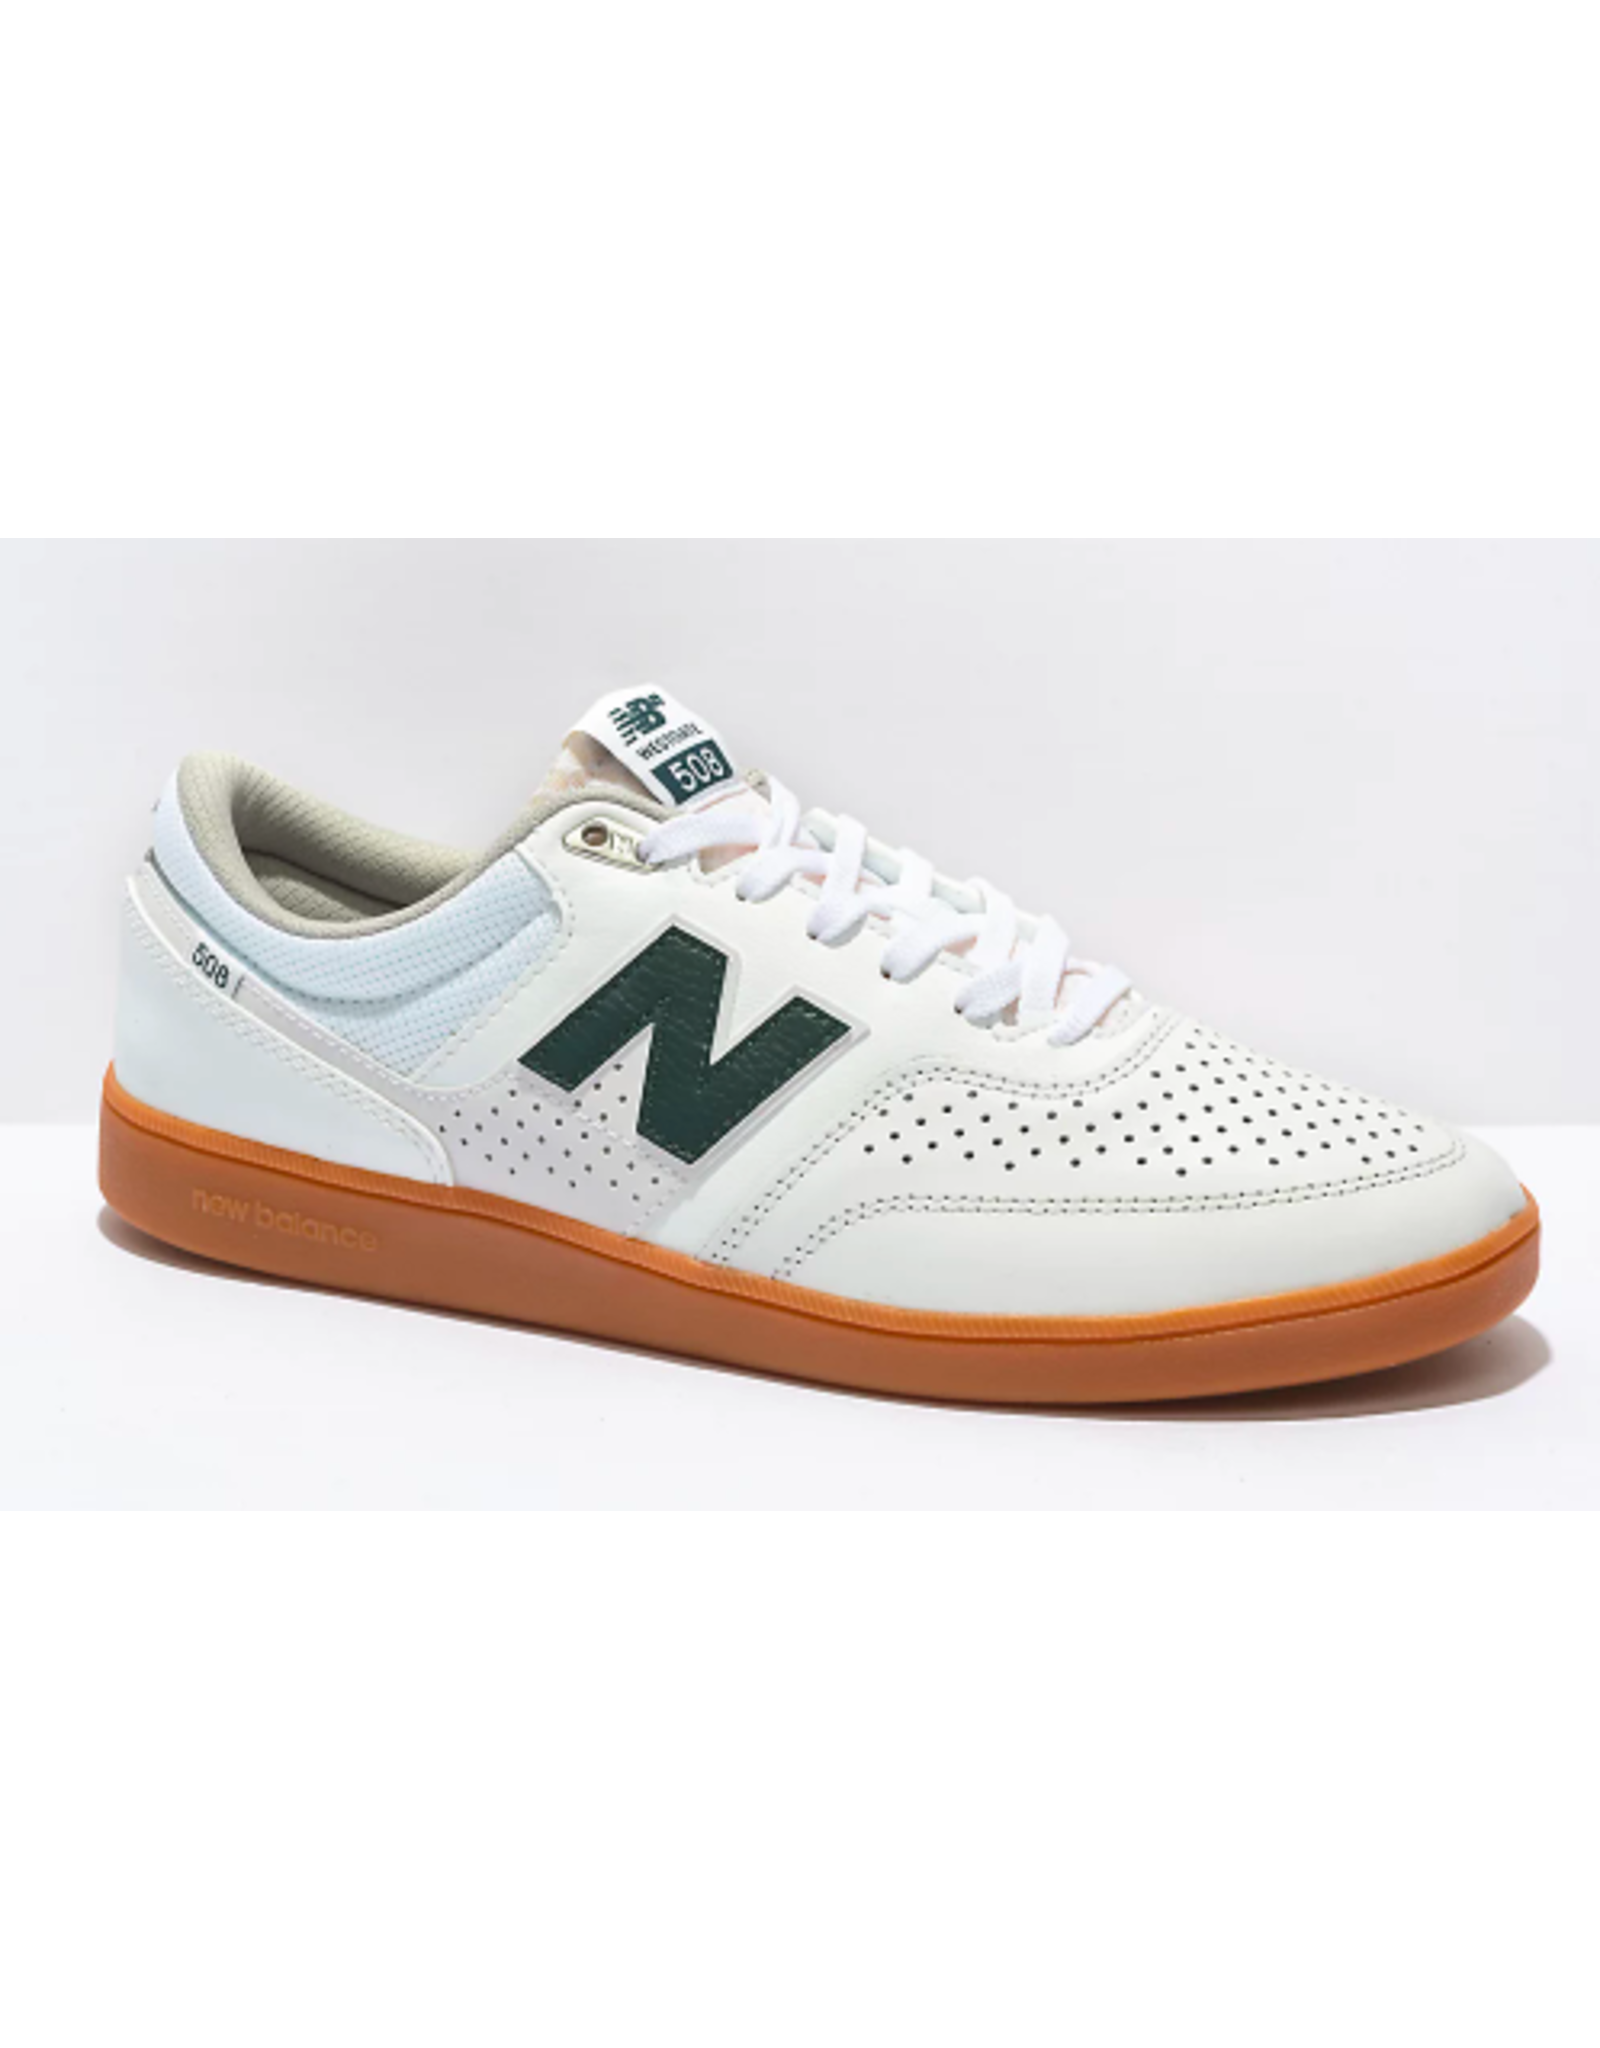 New Balance Men's Numeric 508 Westgate Shoes